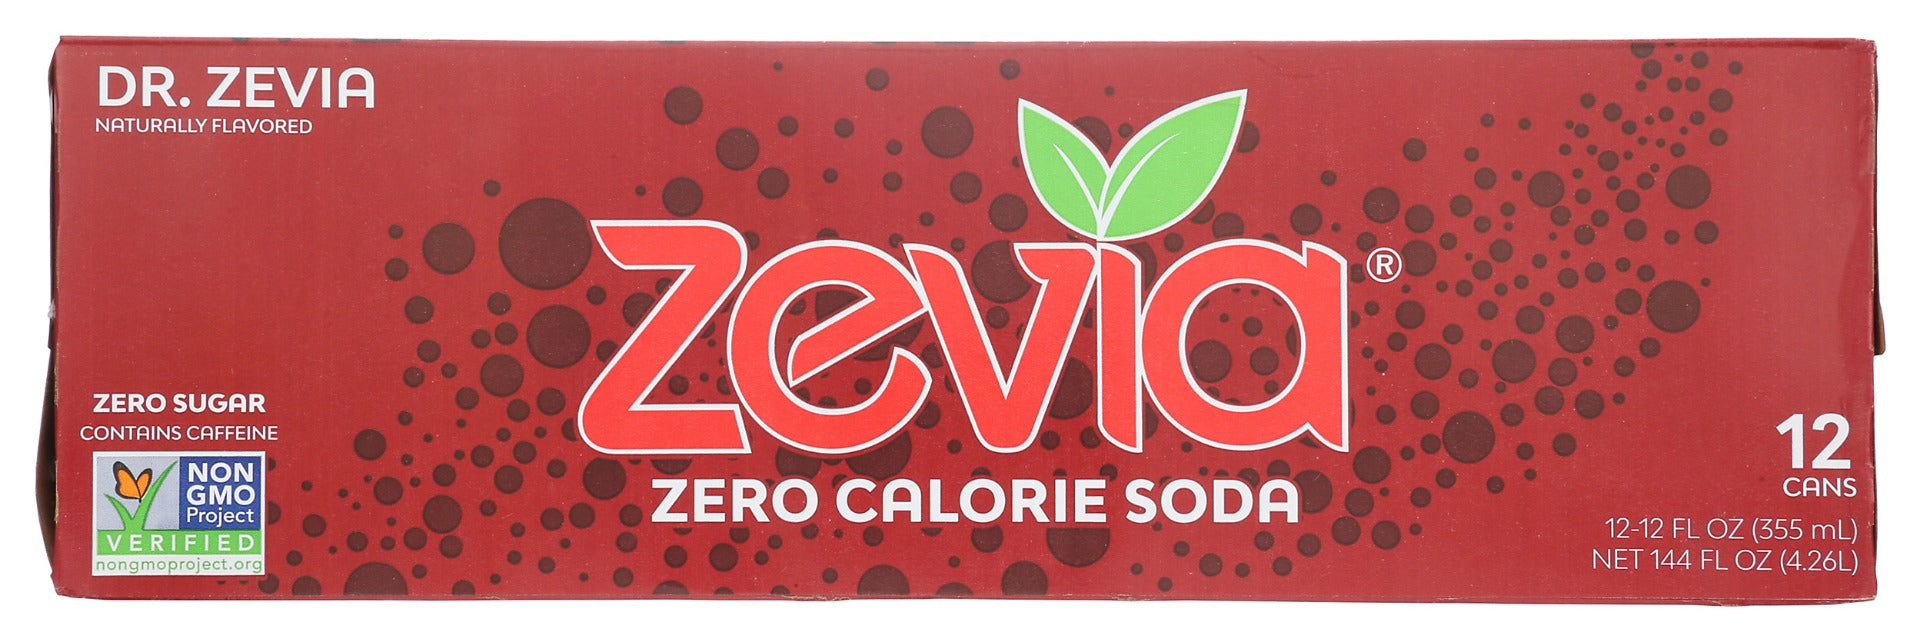 ZEVIA: Zero Calorie Dr Zevia Soda, 144 fo